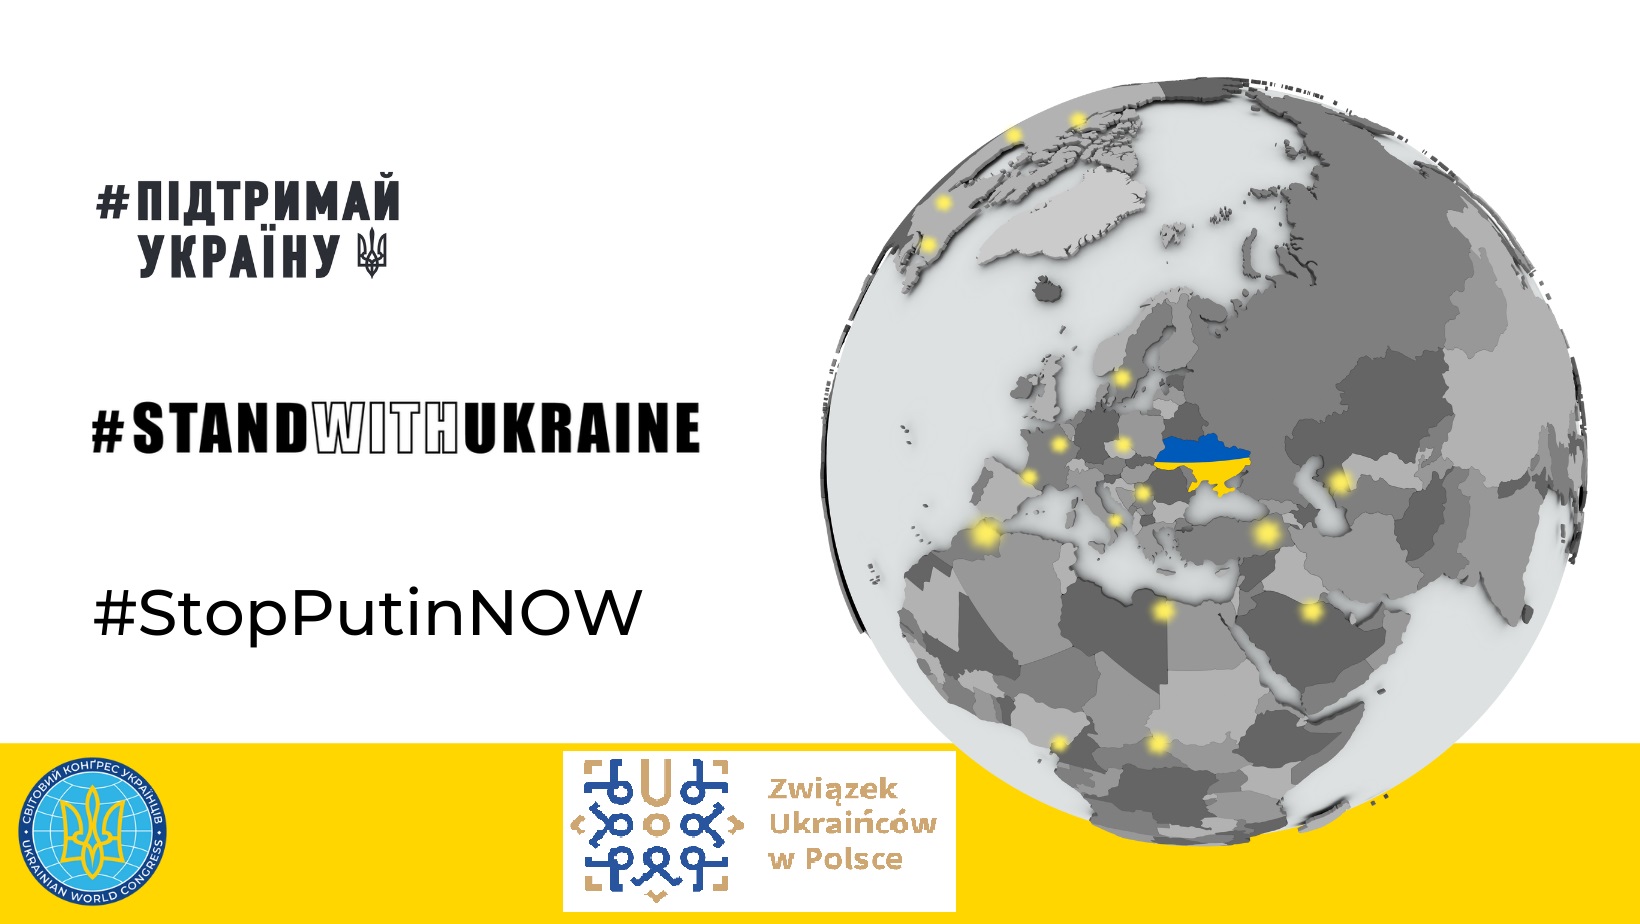 Wspracie organizacyjne dla działań na rzecz uchodźców z Ukrainy